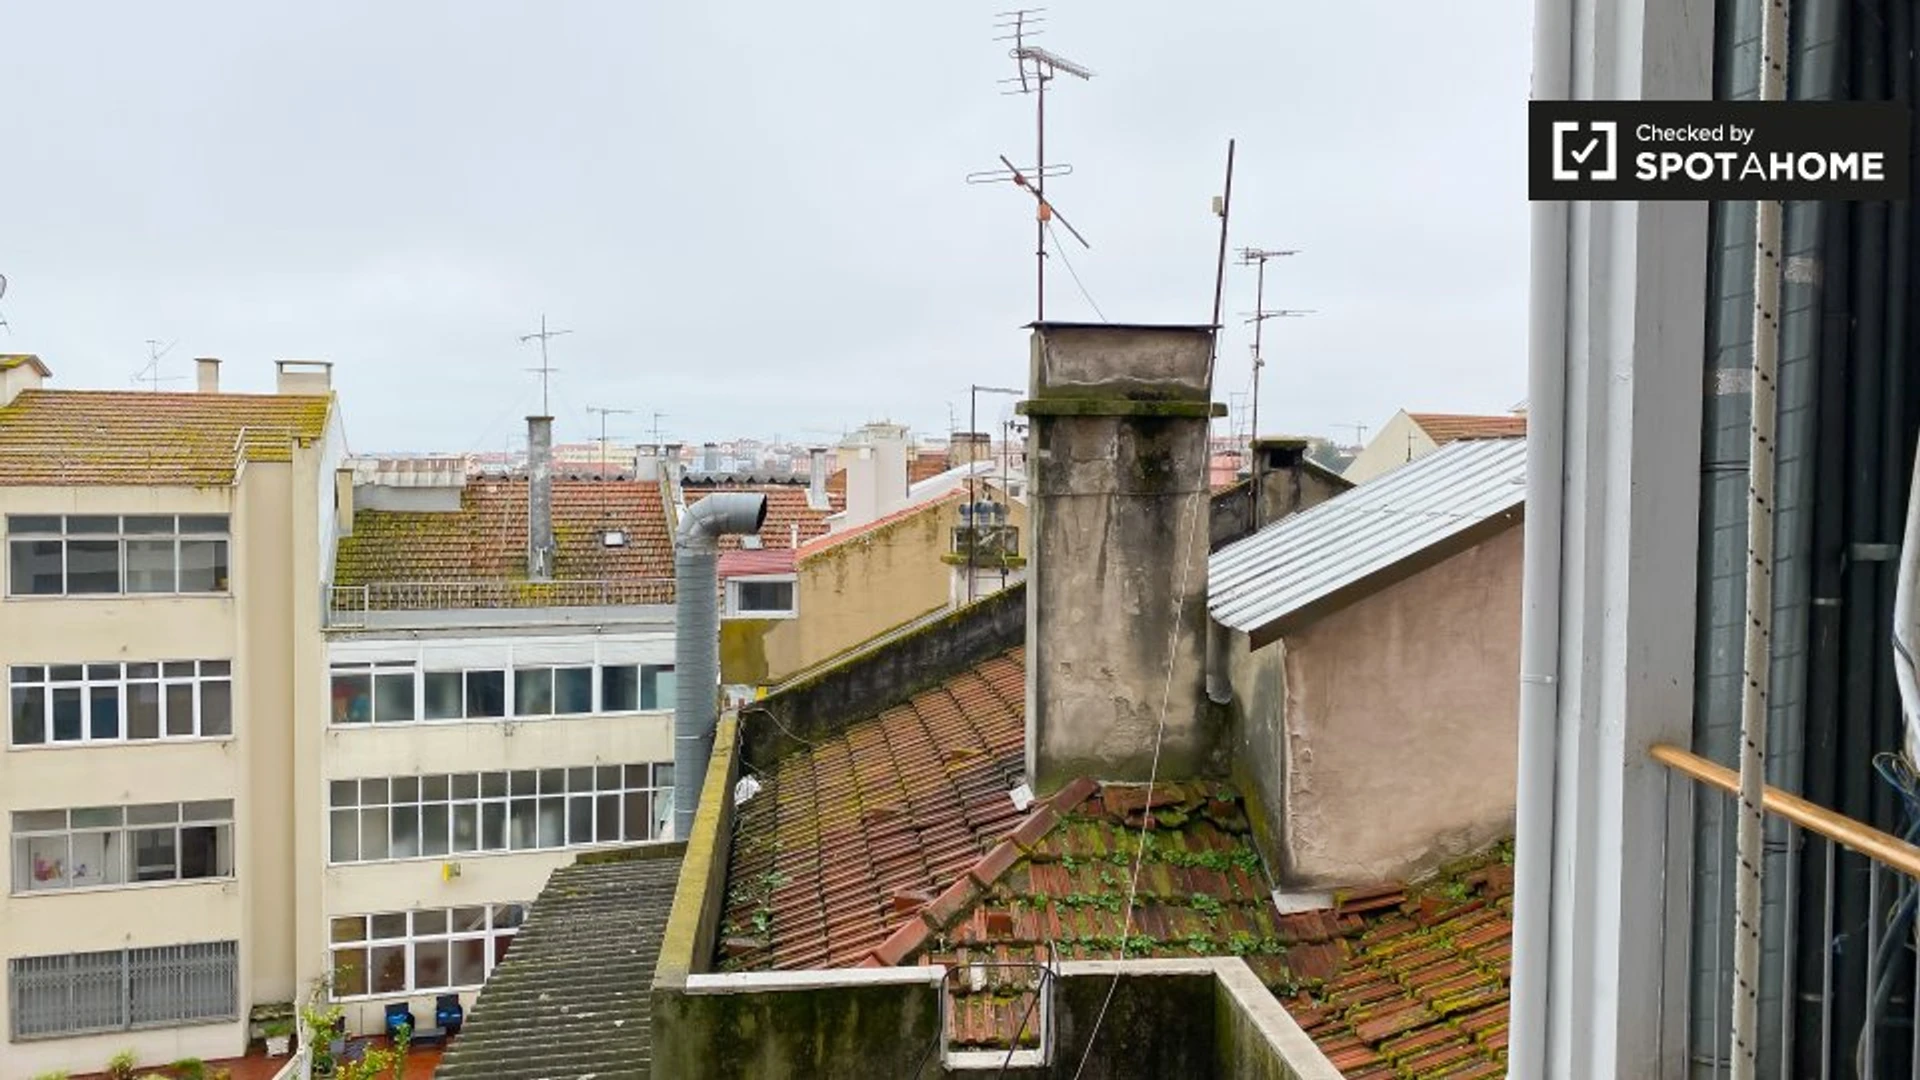 Alquiler de habitaciones por meses en Lisboa